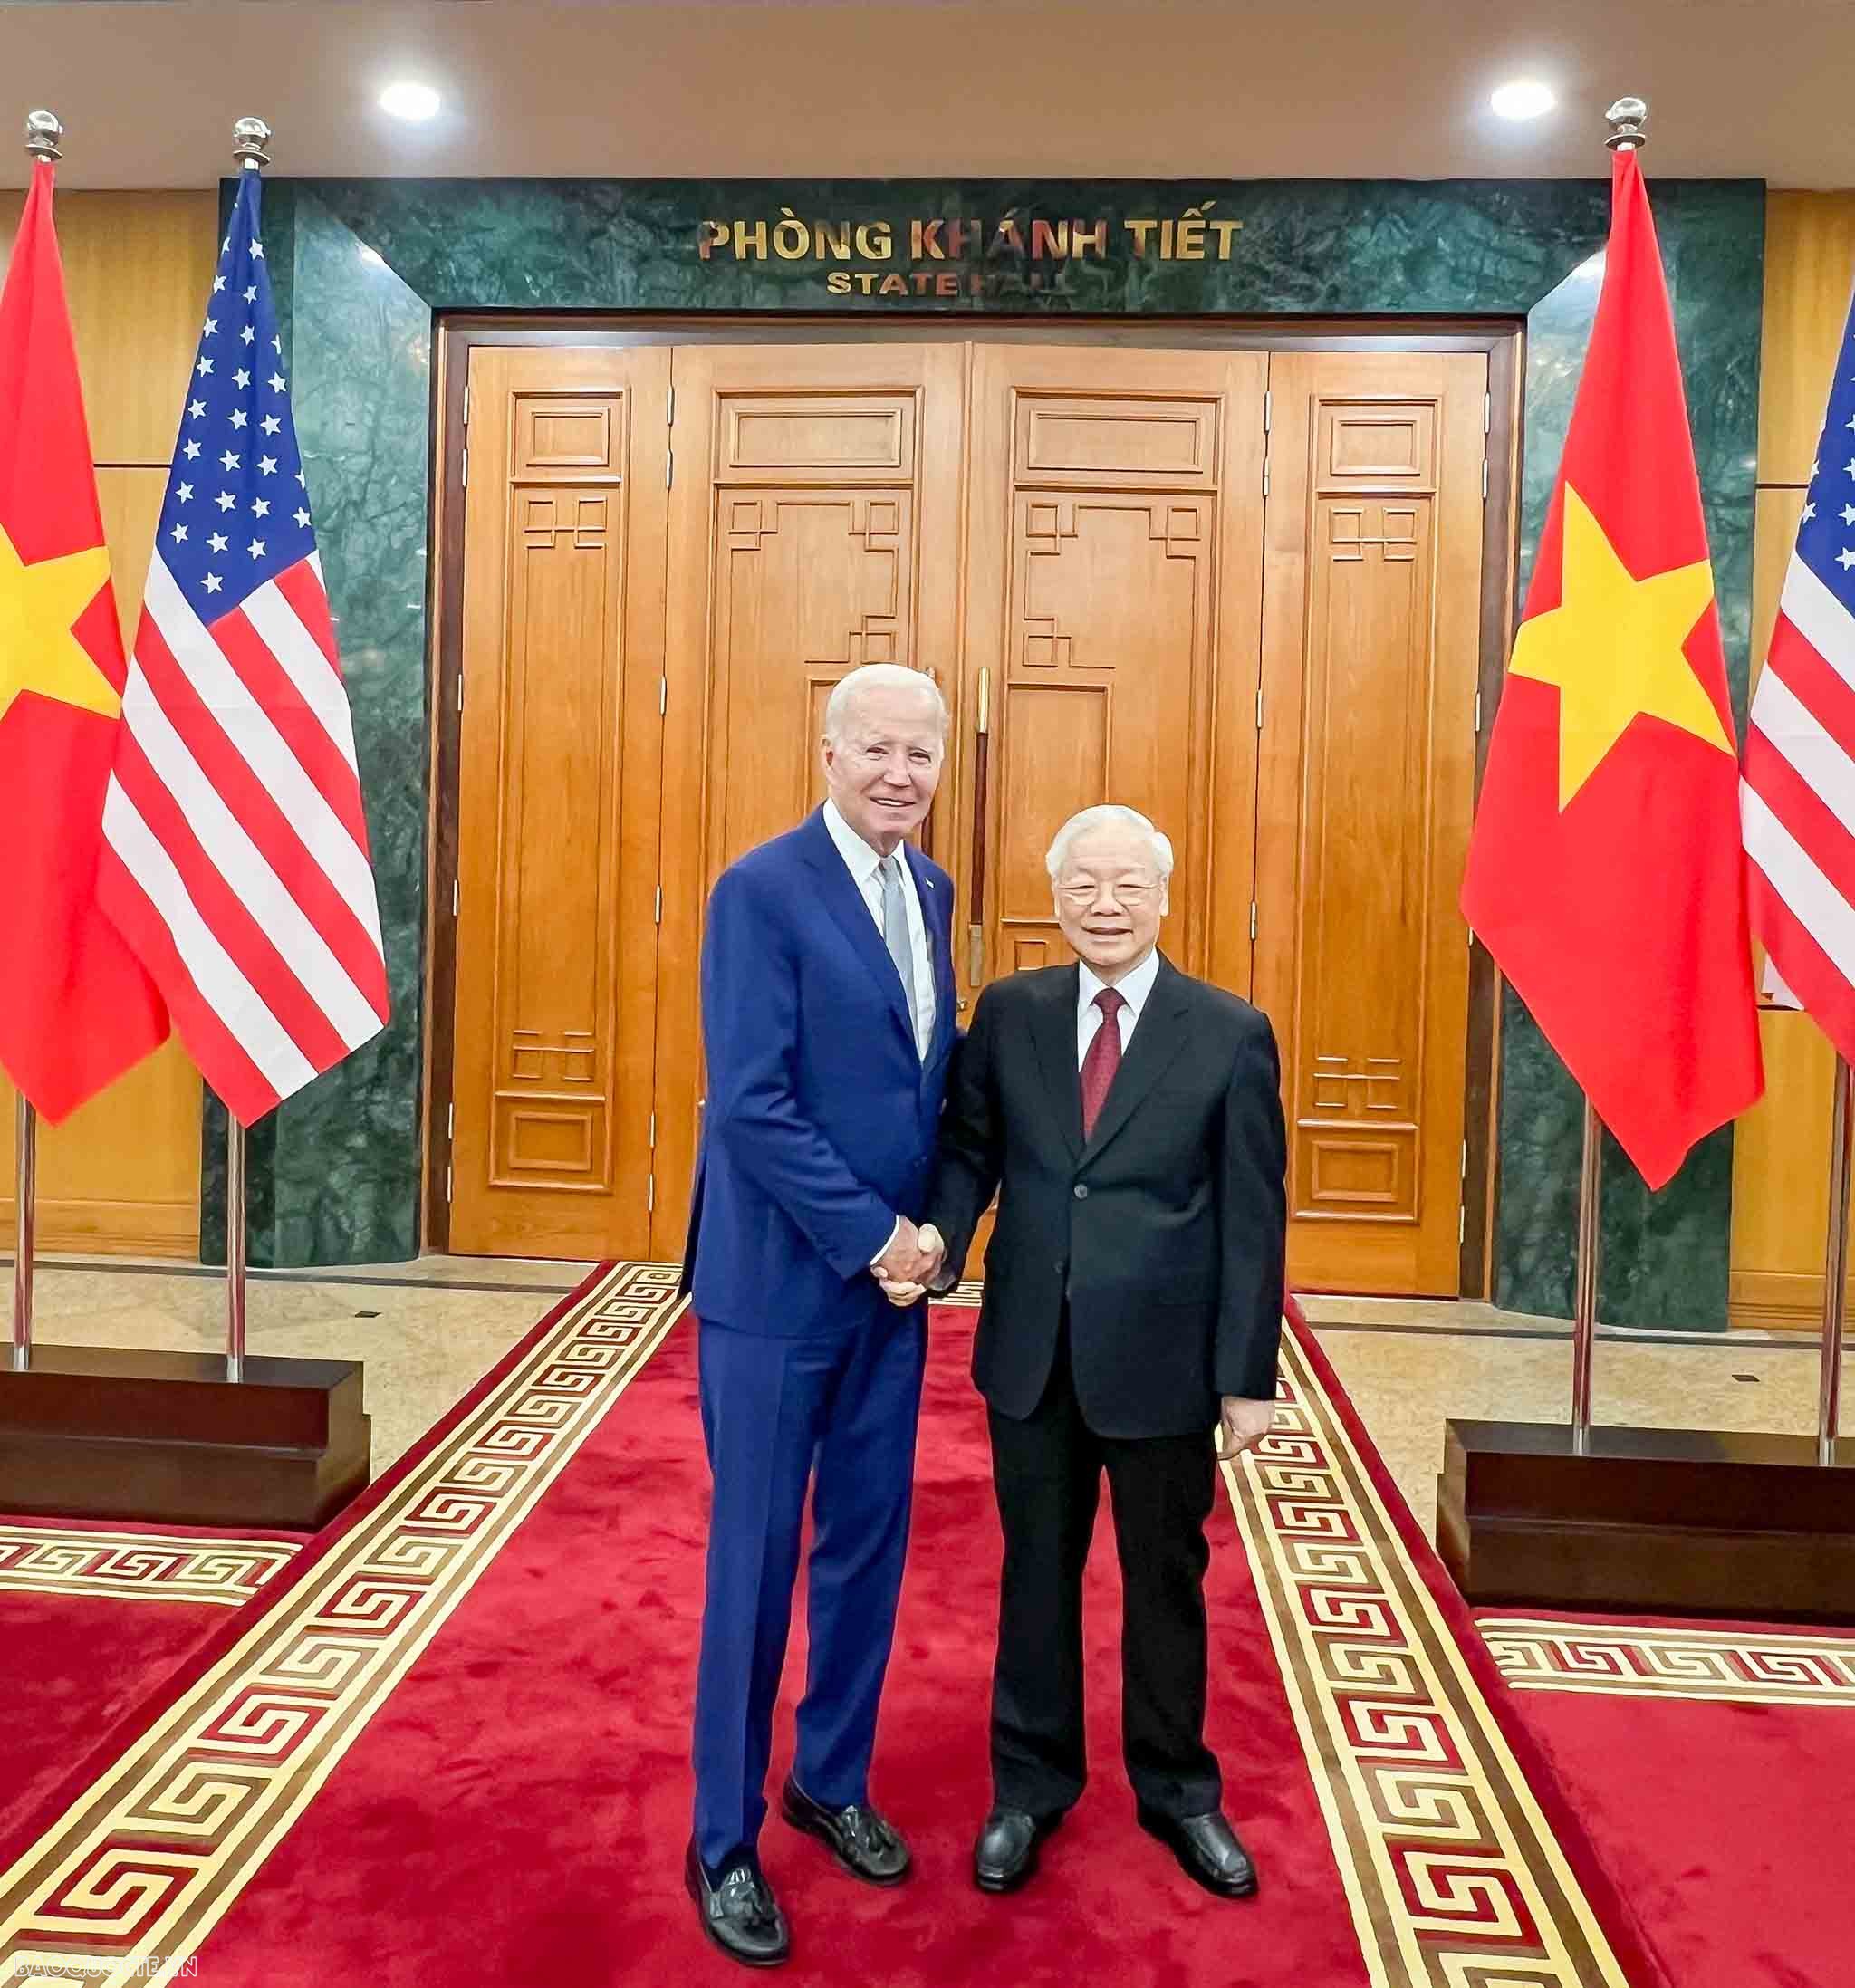 Đây là lần đầu tiên một Tổng thống Hoa Kỳ thăm cấp Nhà nước theo lời mời của Tổng Bí thư Đảng Cộng sản Việt Nam và cũng là lần đầu tiên, cả Tổng thống và Phó Tổng thống Hoa Kỳ cùng thăm Việt Nam trong một nhiệm kỳ.